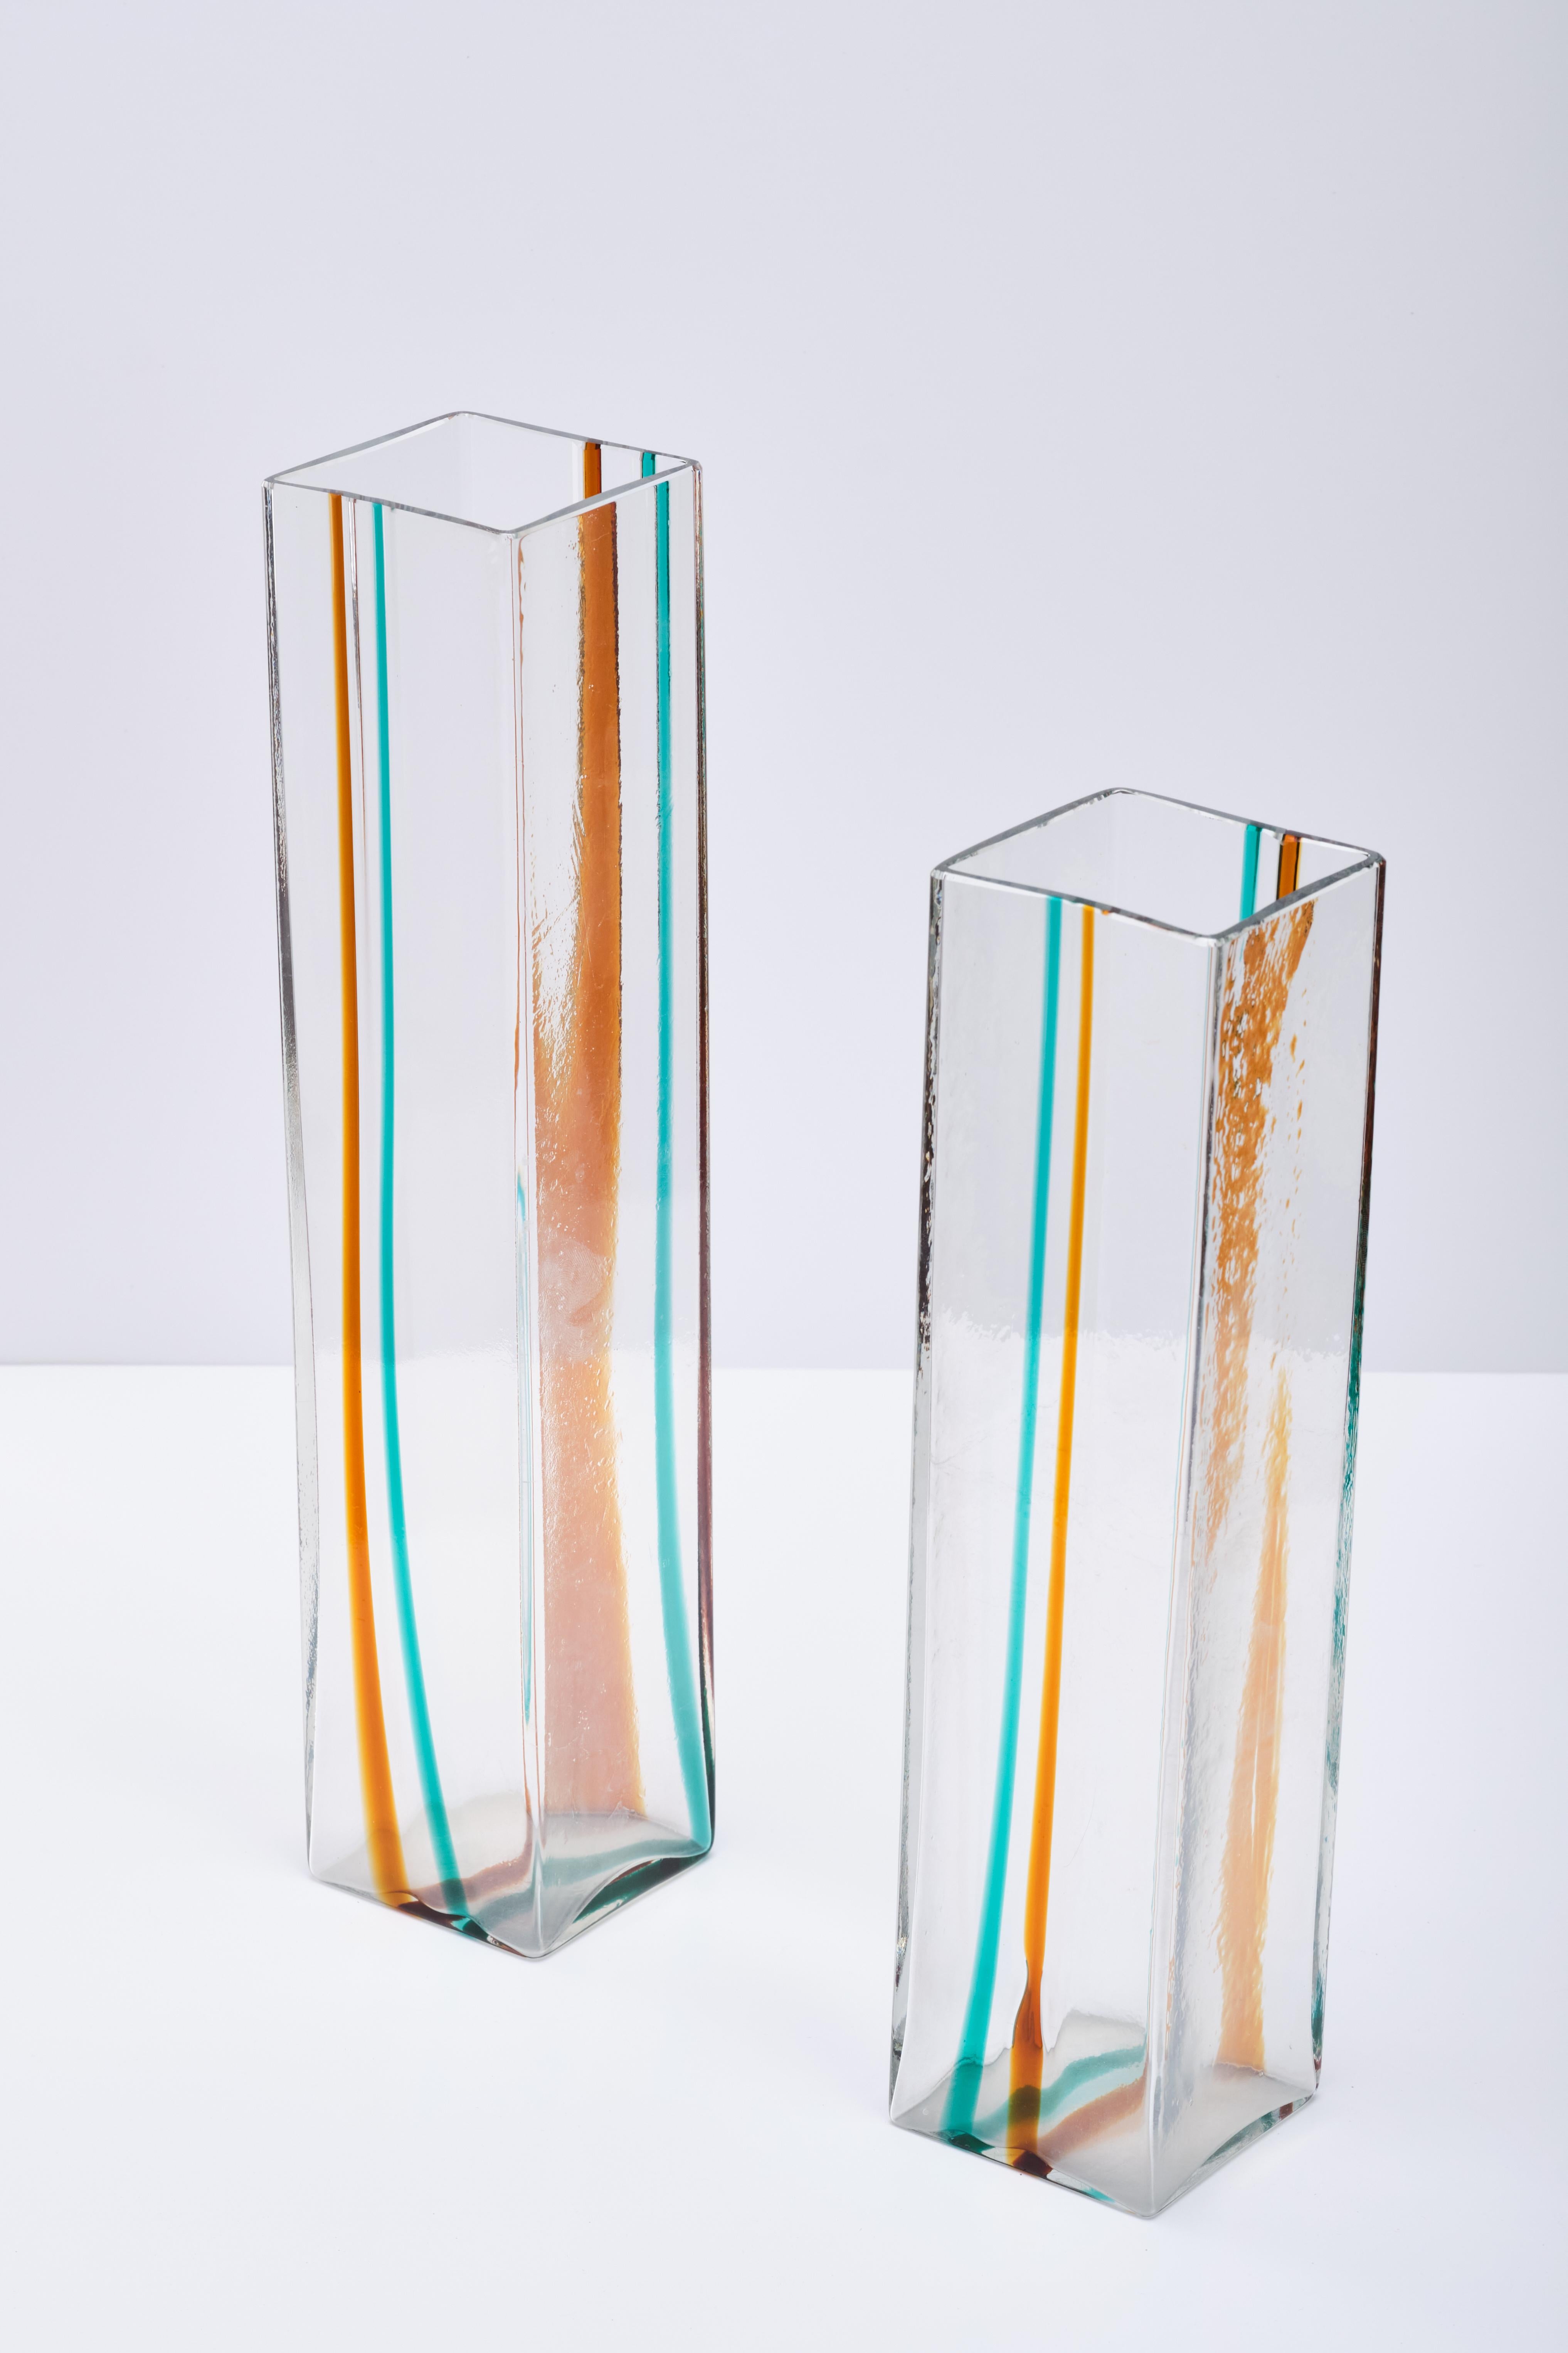 Zwei Venini Vasen Form geblasenem Glas mit Dekoration auf dem Band in farbigem Glas. Unterzeichnet in Venini Italia Säure. Produziert von Venini, Italien, um 1970. 
Seltenes geblasenes Glas von Laura de Santillana für Venini aus den 1970er Jahren,